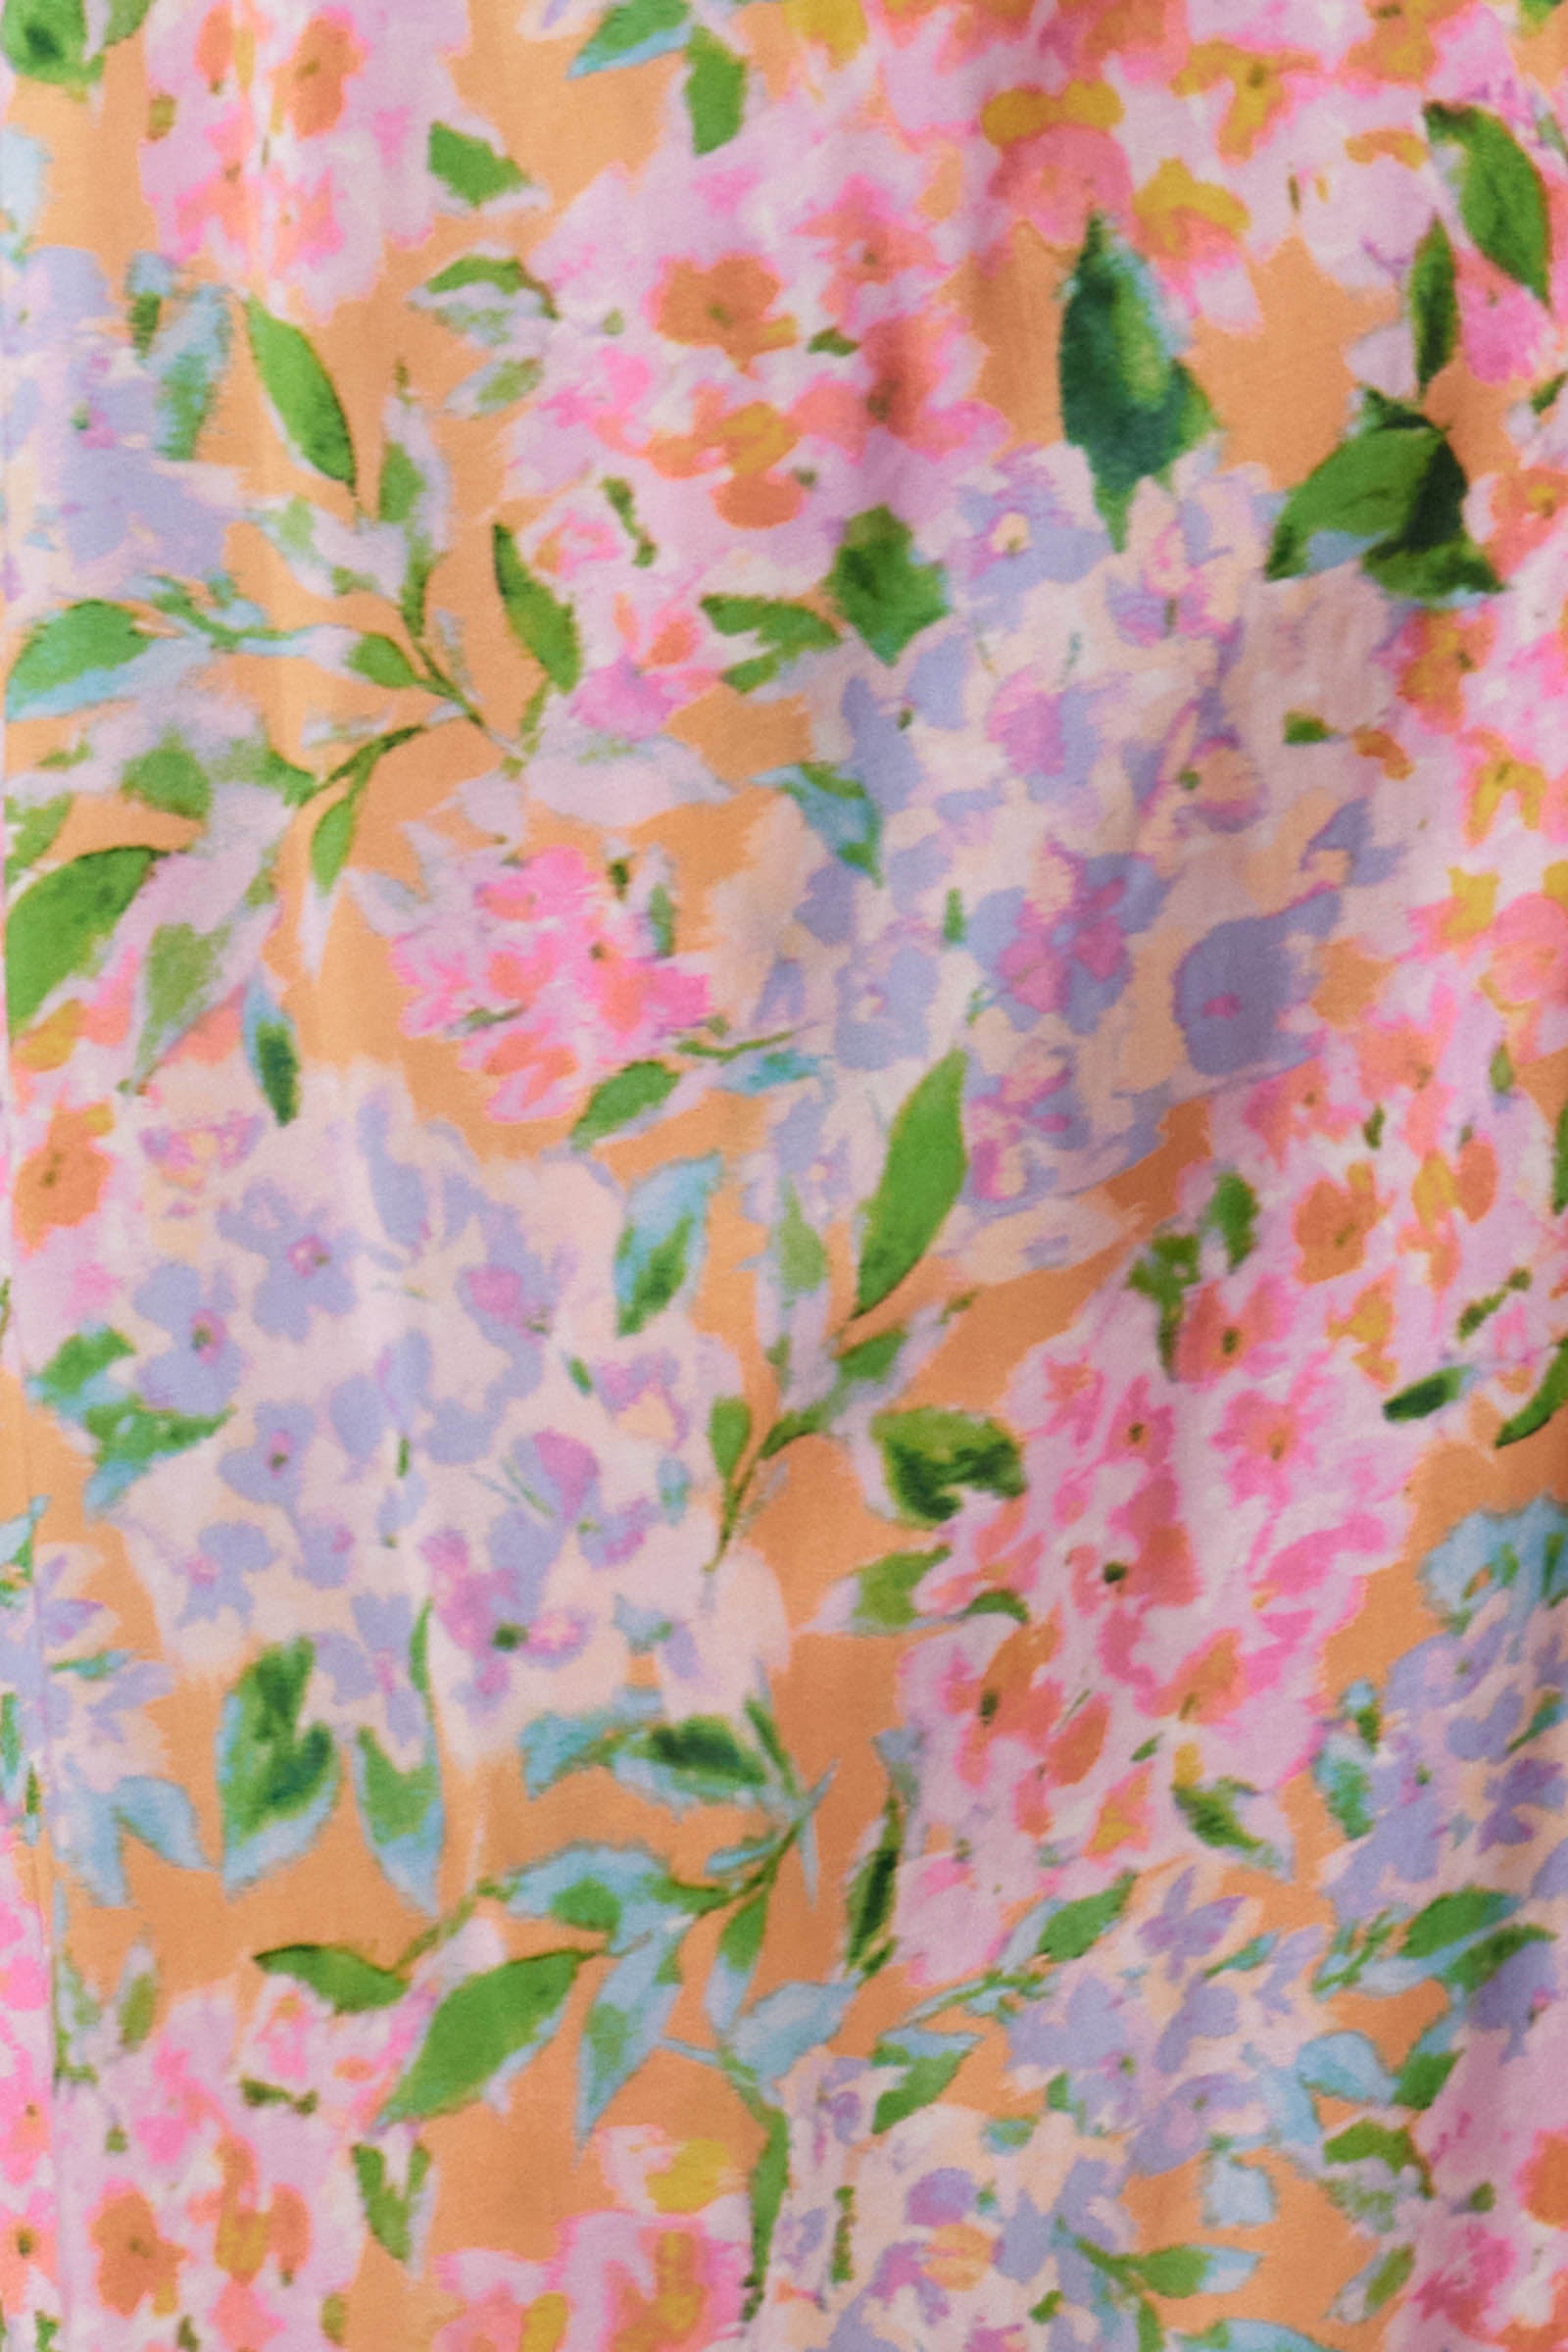 Botanical Tiered Dress - Sunset Hydrangea - Isle of Mine Clothing - Dress Maxi